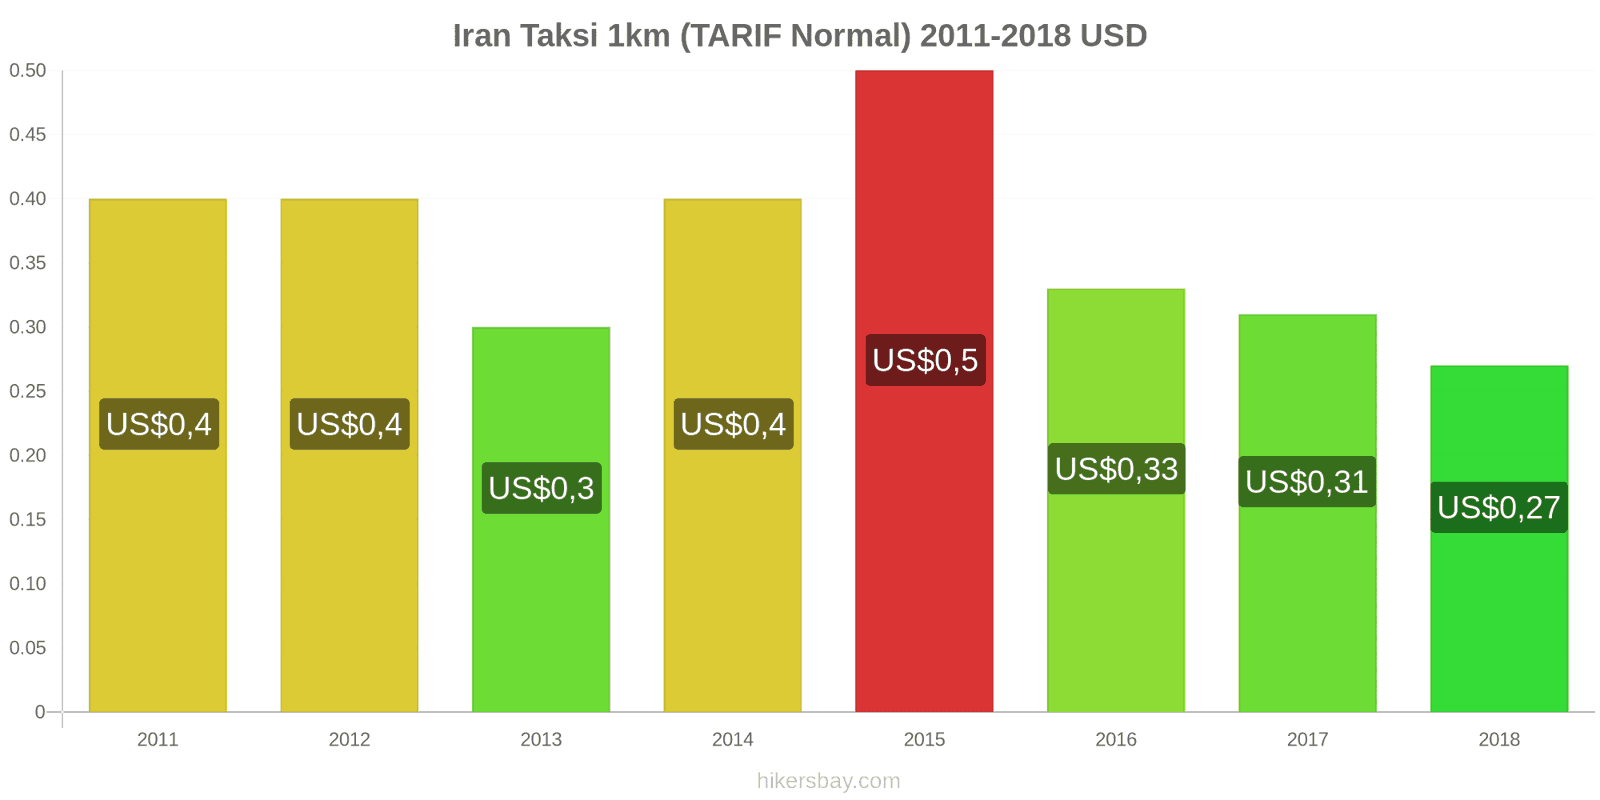 Iran perubahan harga Taksi 1km (Tarif Normal) hikersbay.com